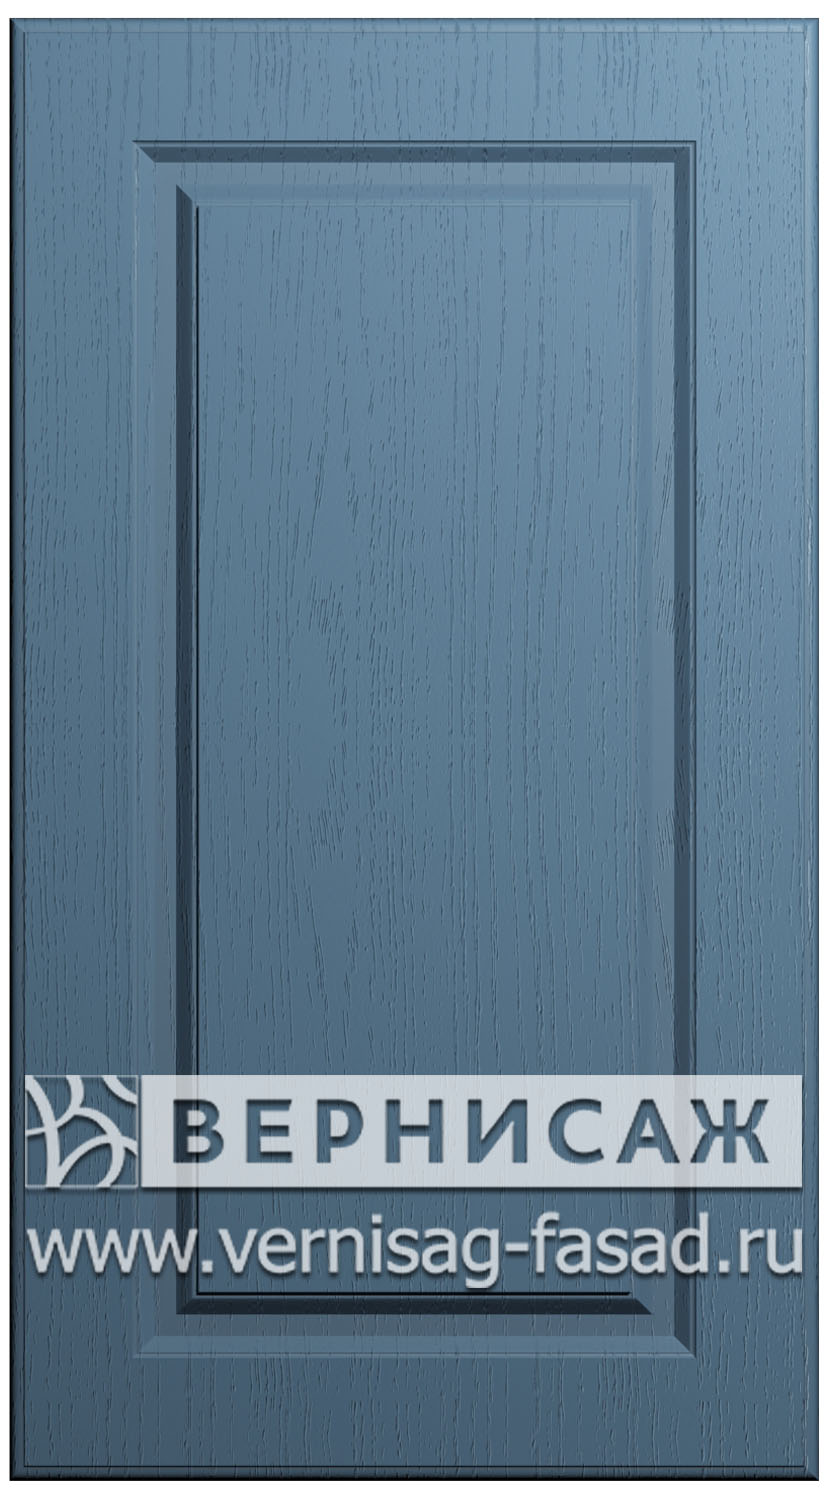 Фасады в пленке ПВХ, Фрезеровка № 73, цвет Массив Деним